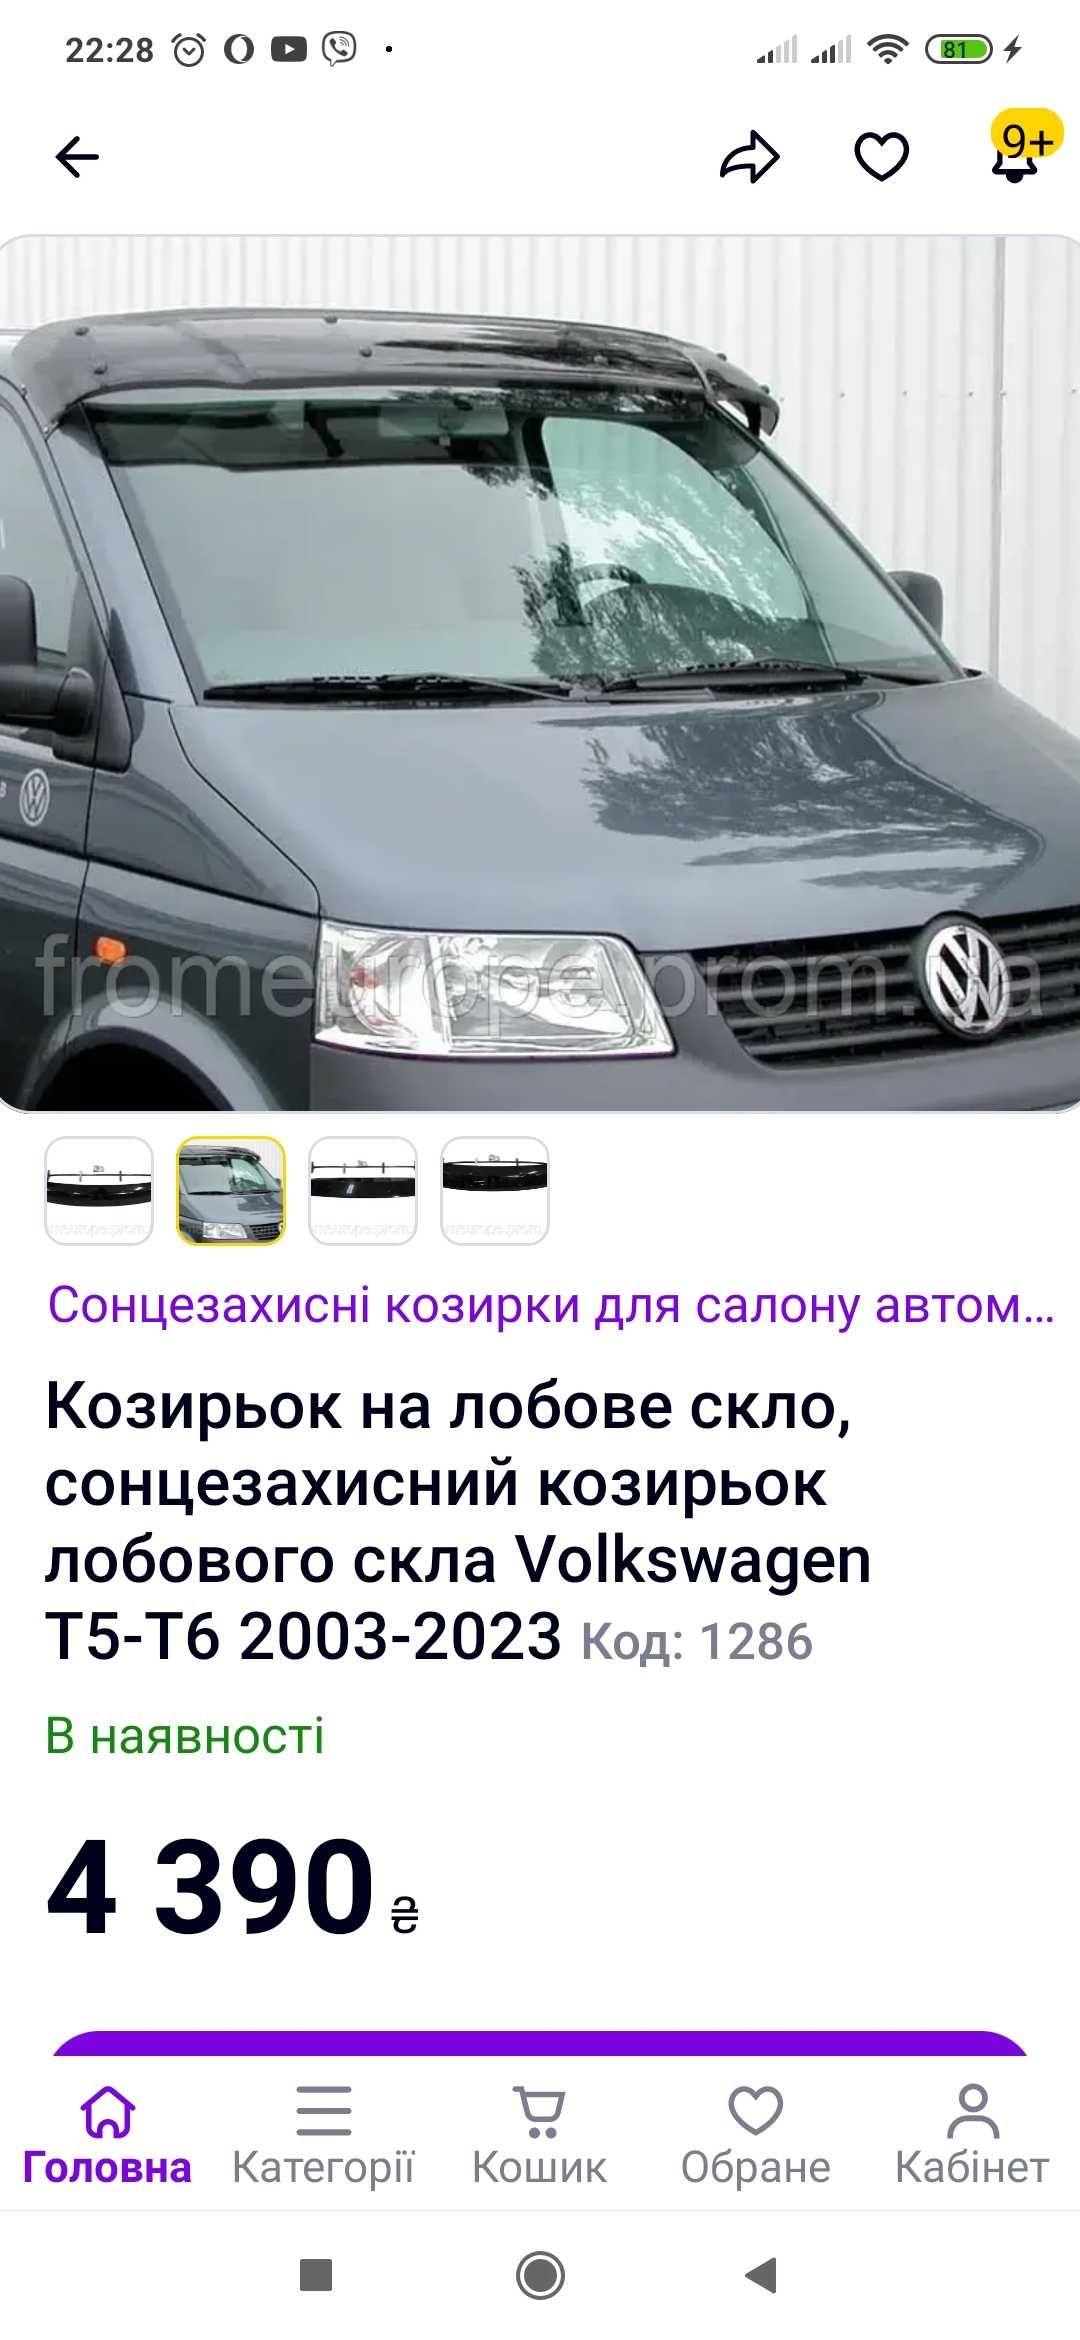 Сонцезахисніий козирьок Volkswagen T-5 -T6   2003-2023 рік 3000 грн.